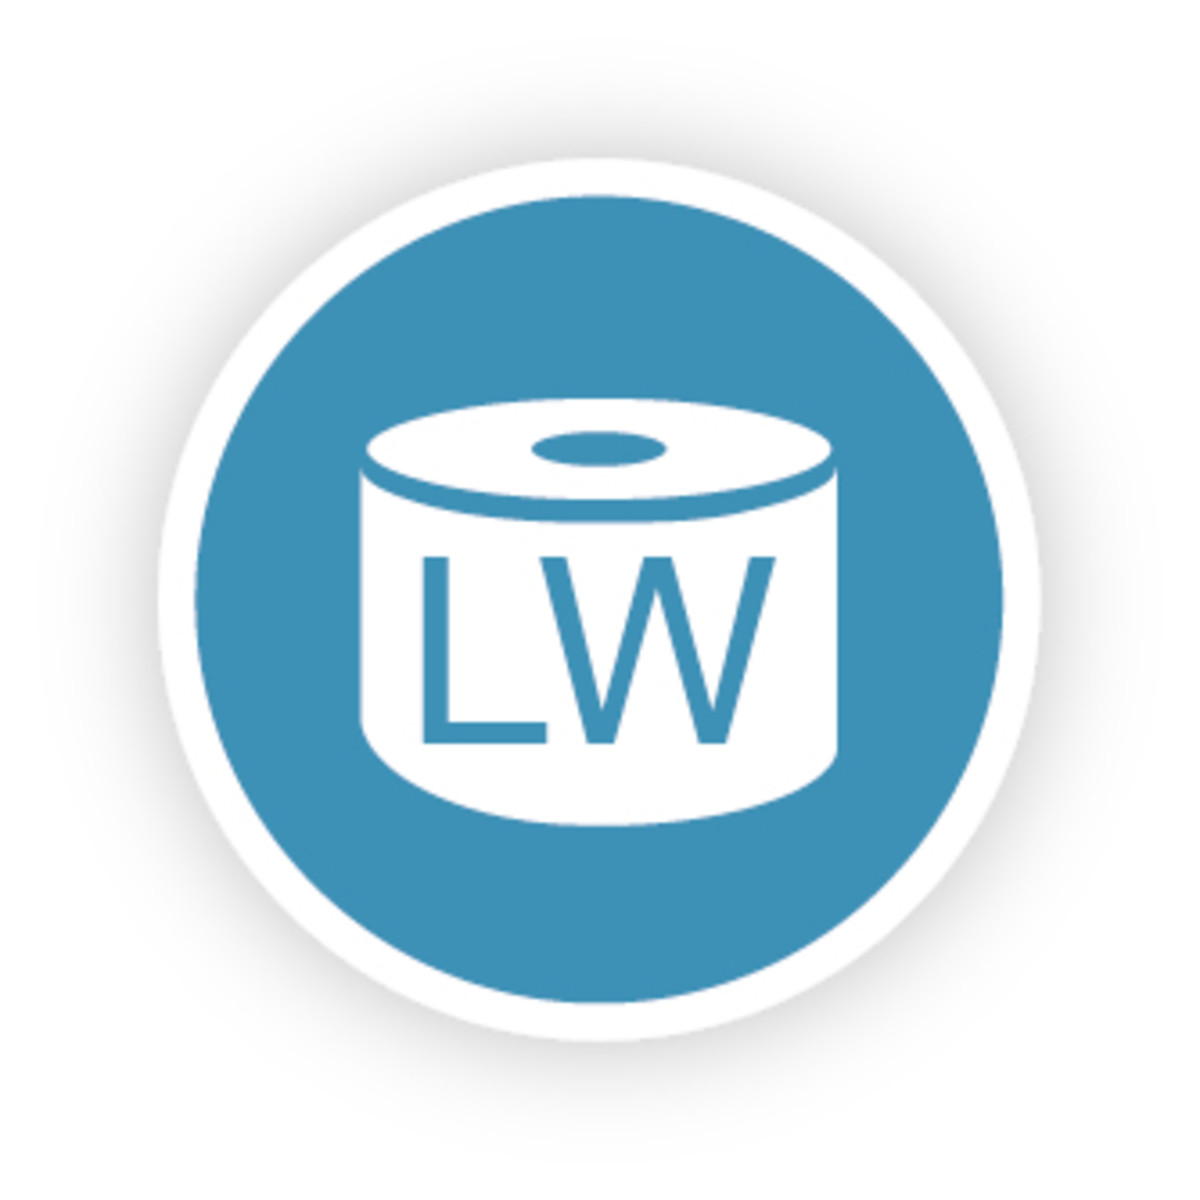 LW Lrg Add Labels 24/Roll